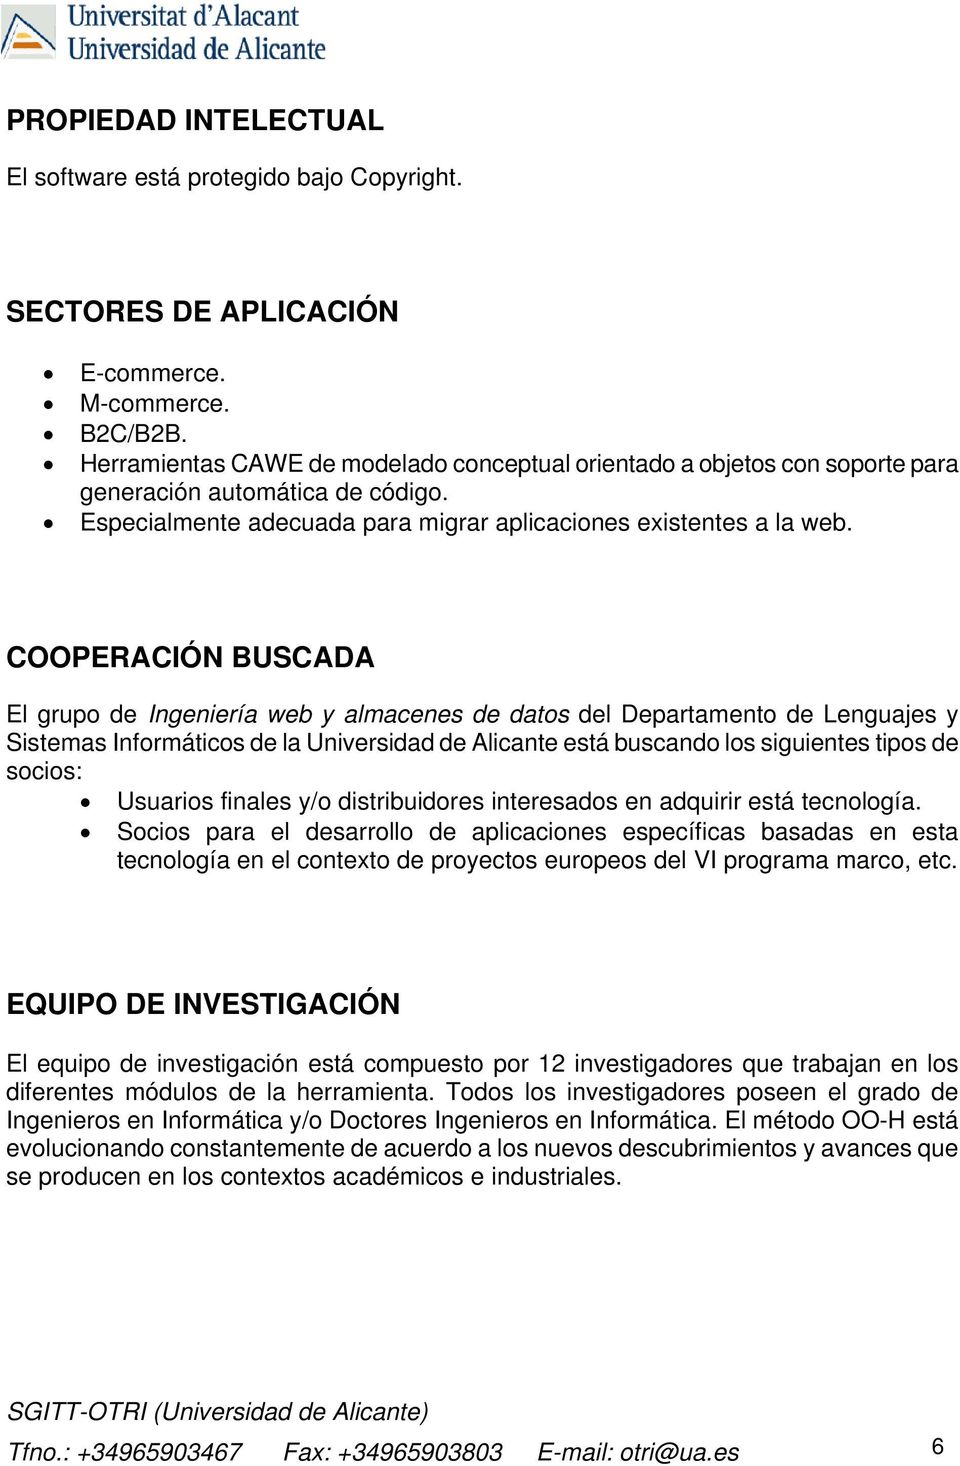 COOPERACIÓN BUSCADA El grupo de Ingeniería web y almacenes de datos del Departamento de Lenguajes y Sistemas Informáticos de la Universidad de Alicante está buscando los siguientes tipos de socios: